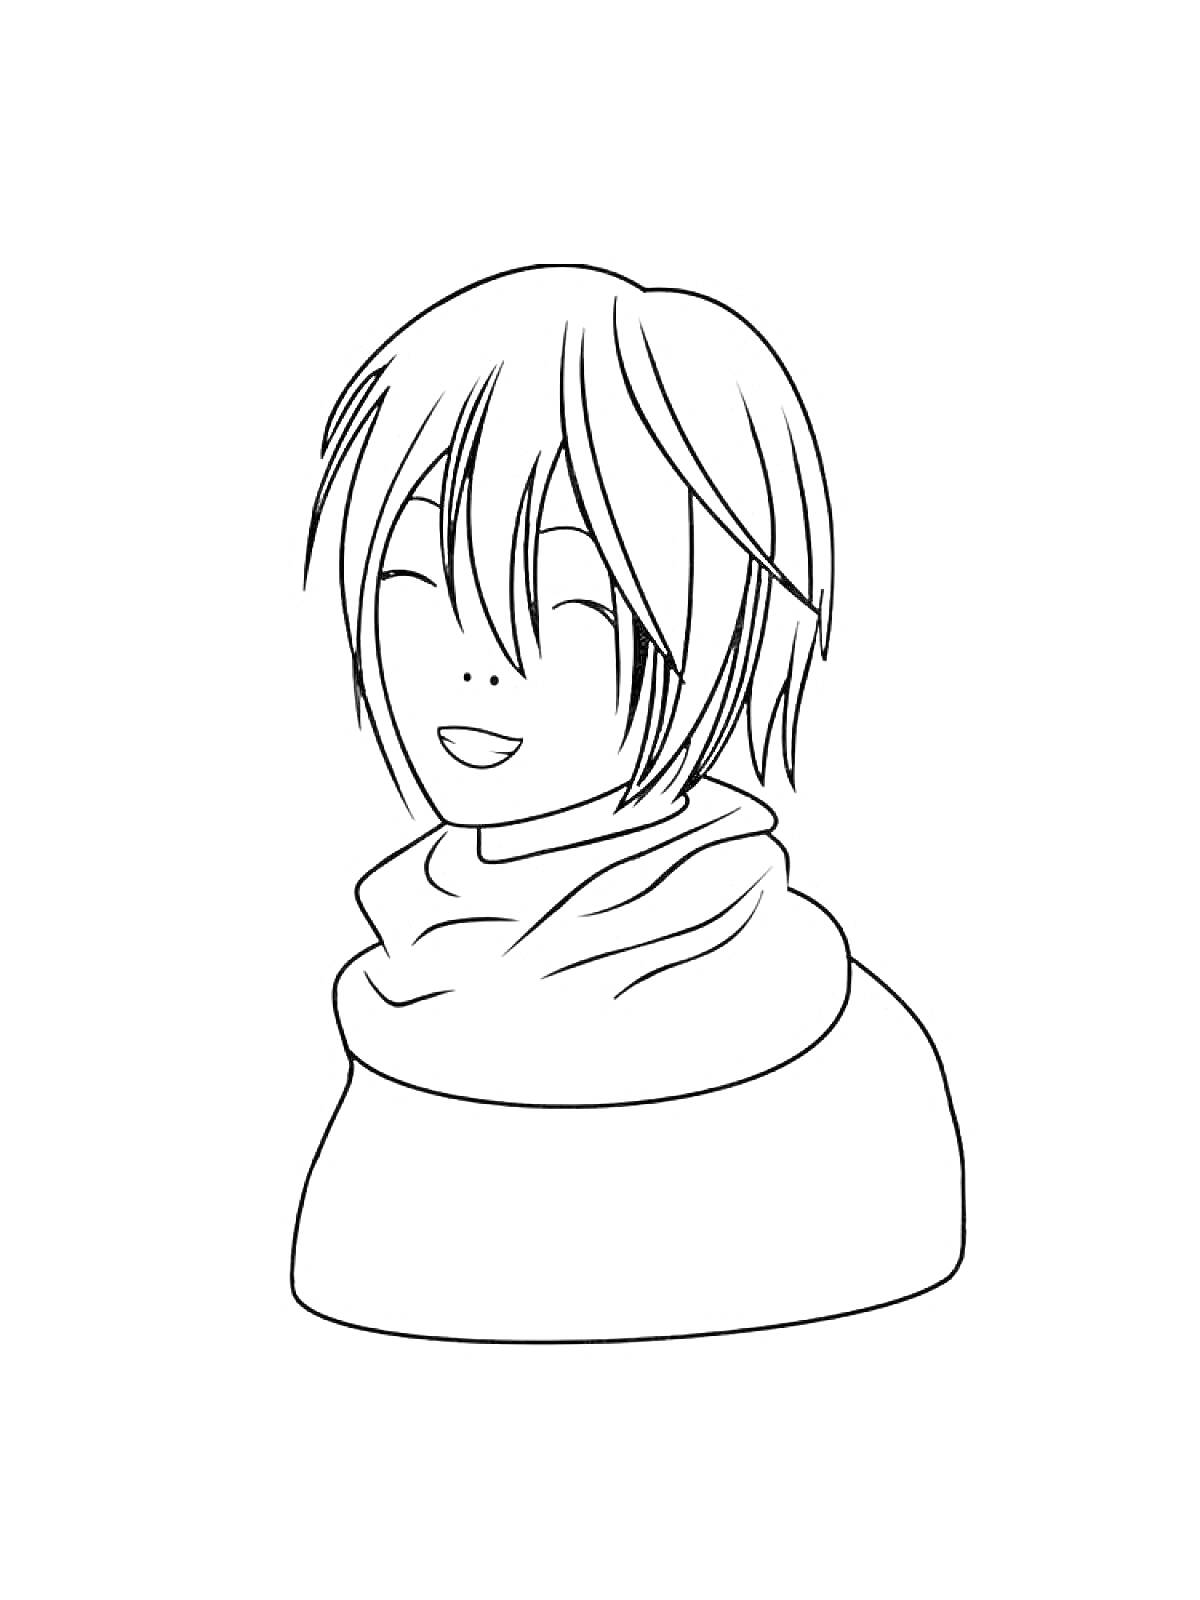 Раскраска Смех молодого человека с короткими волосами, одетого в шарф